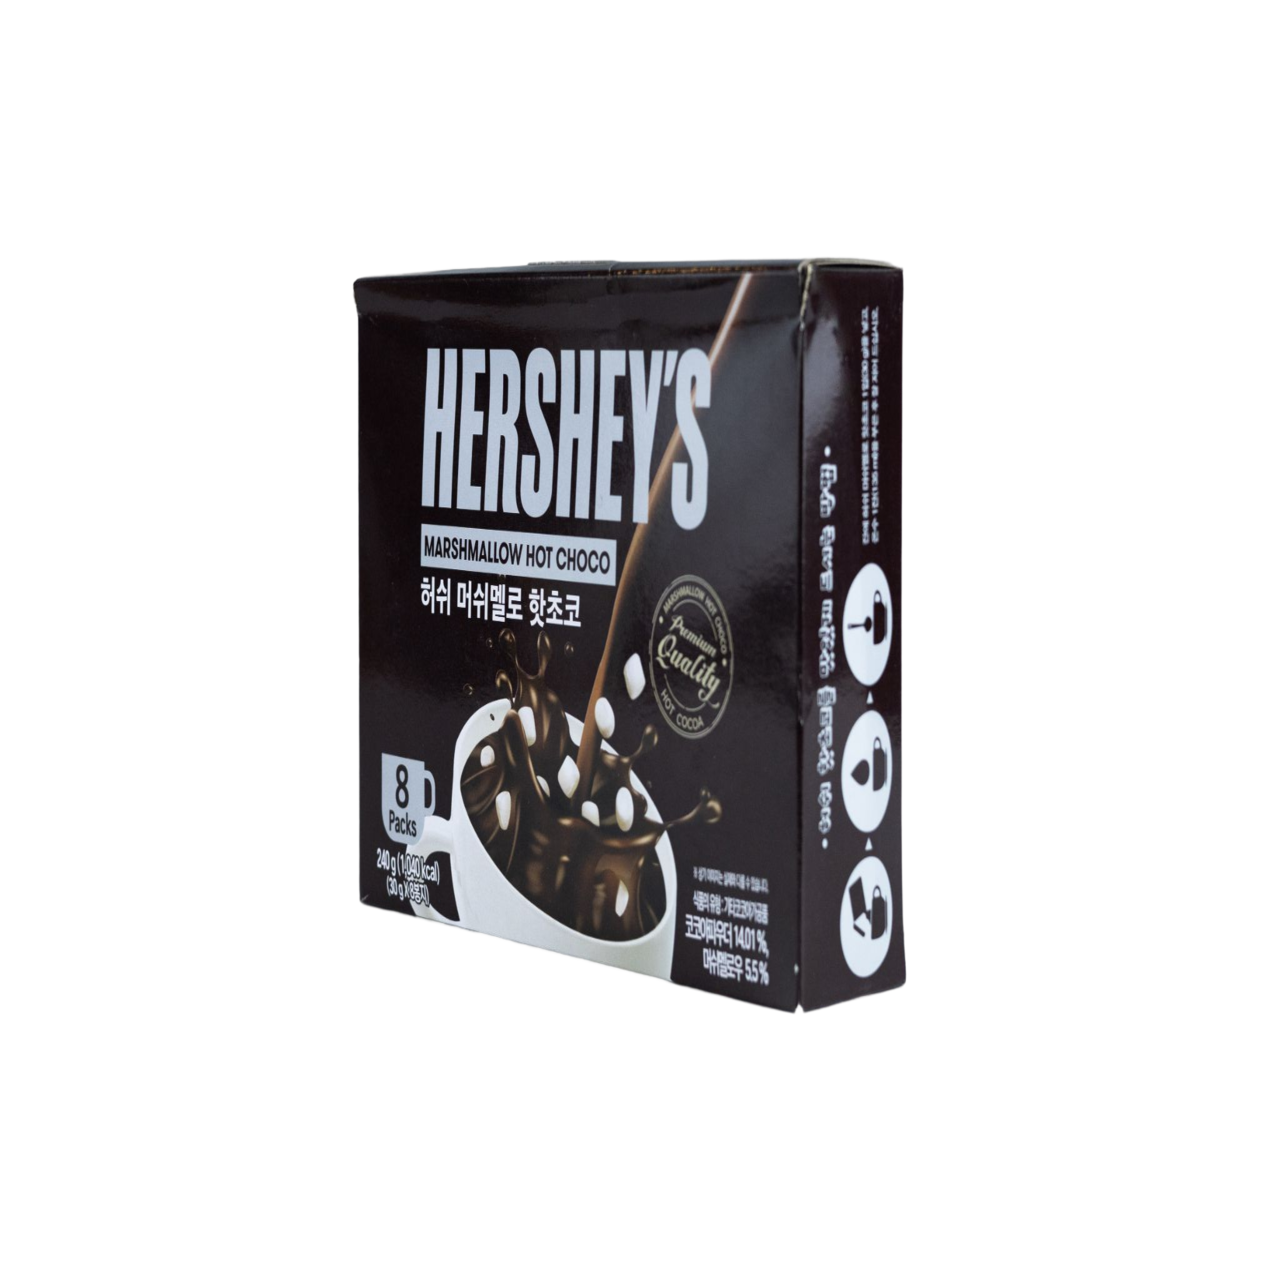 Hershey’s Marshmallow Hot Choco